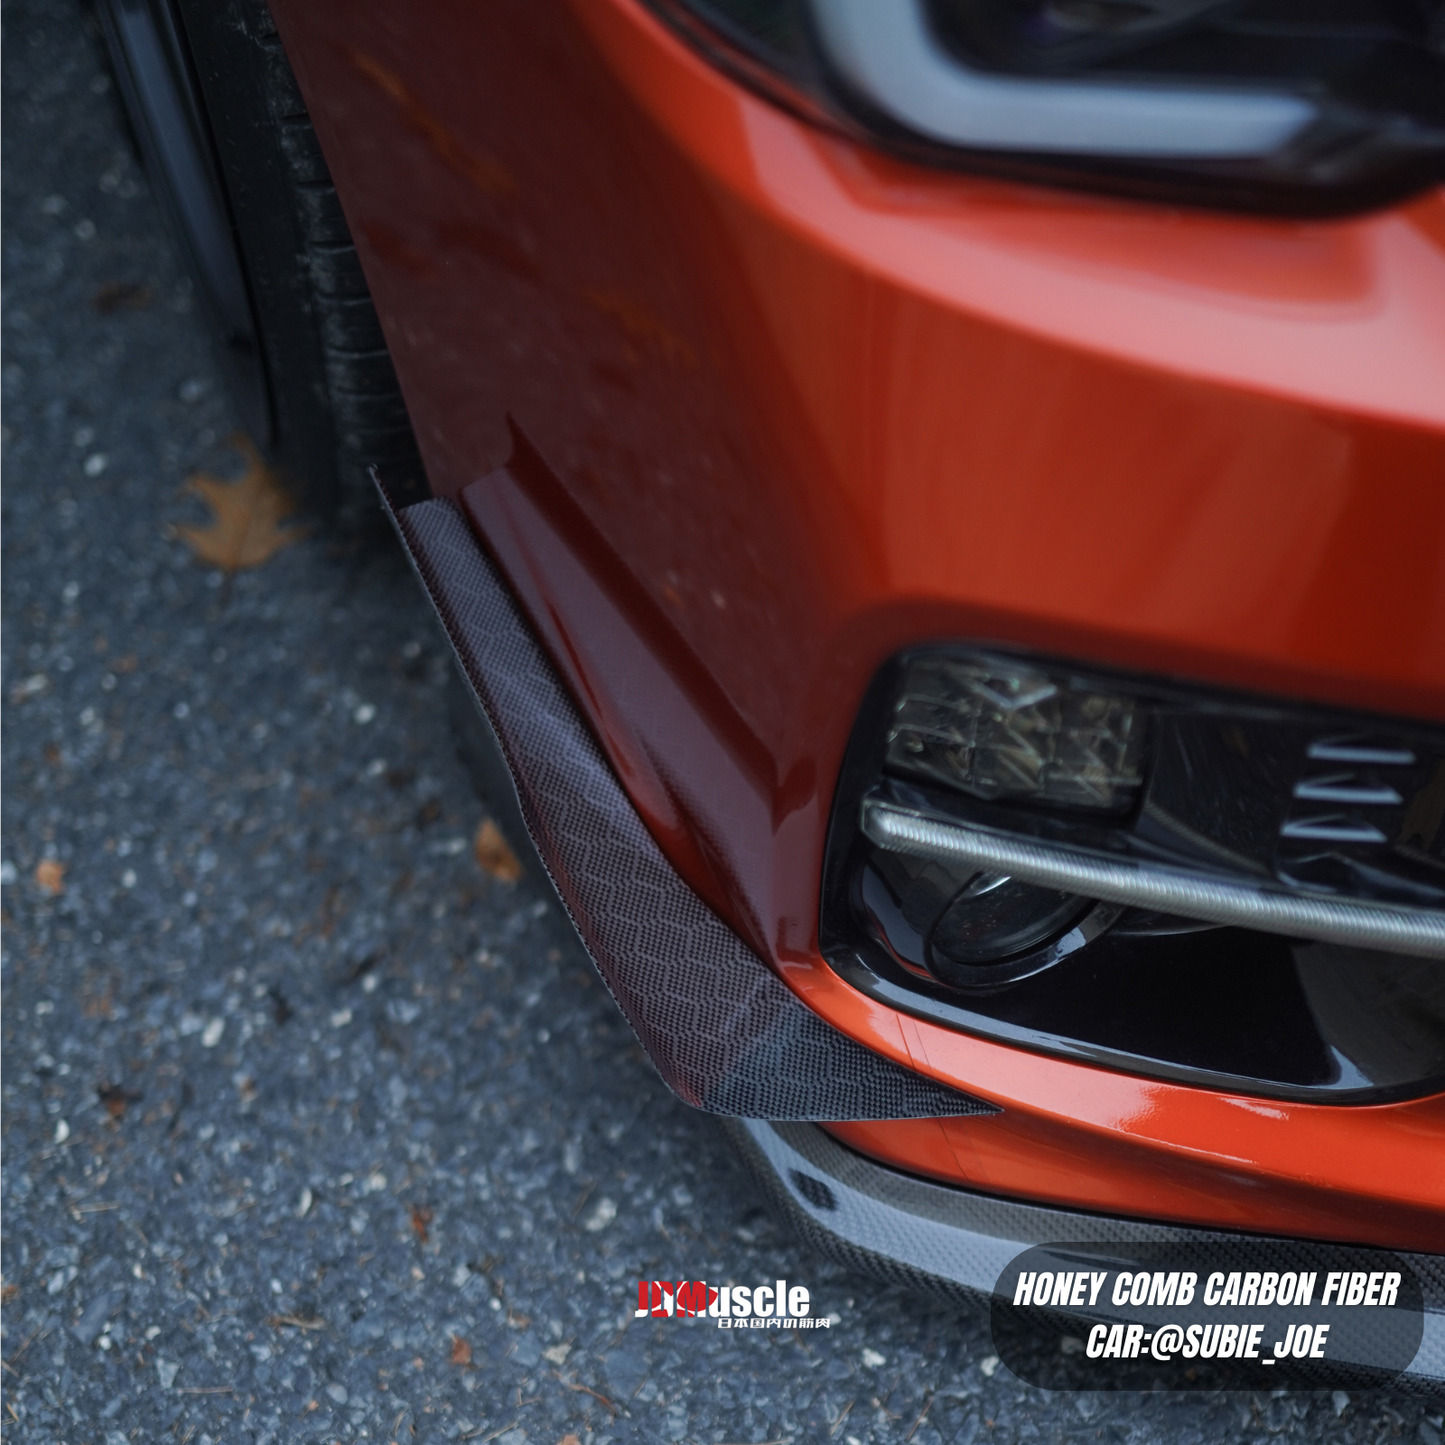 JDMuscle Tanso Carbon Fiber Canards V1 for 2015-2017 Subaru WRX/STI w/ stock bumper